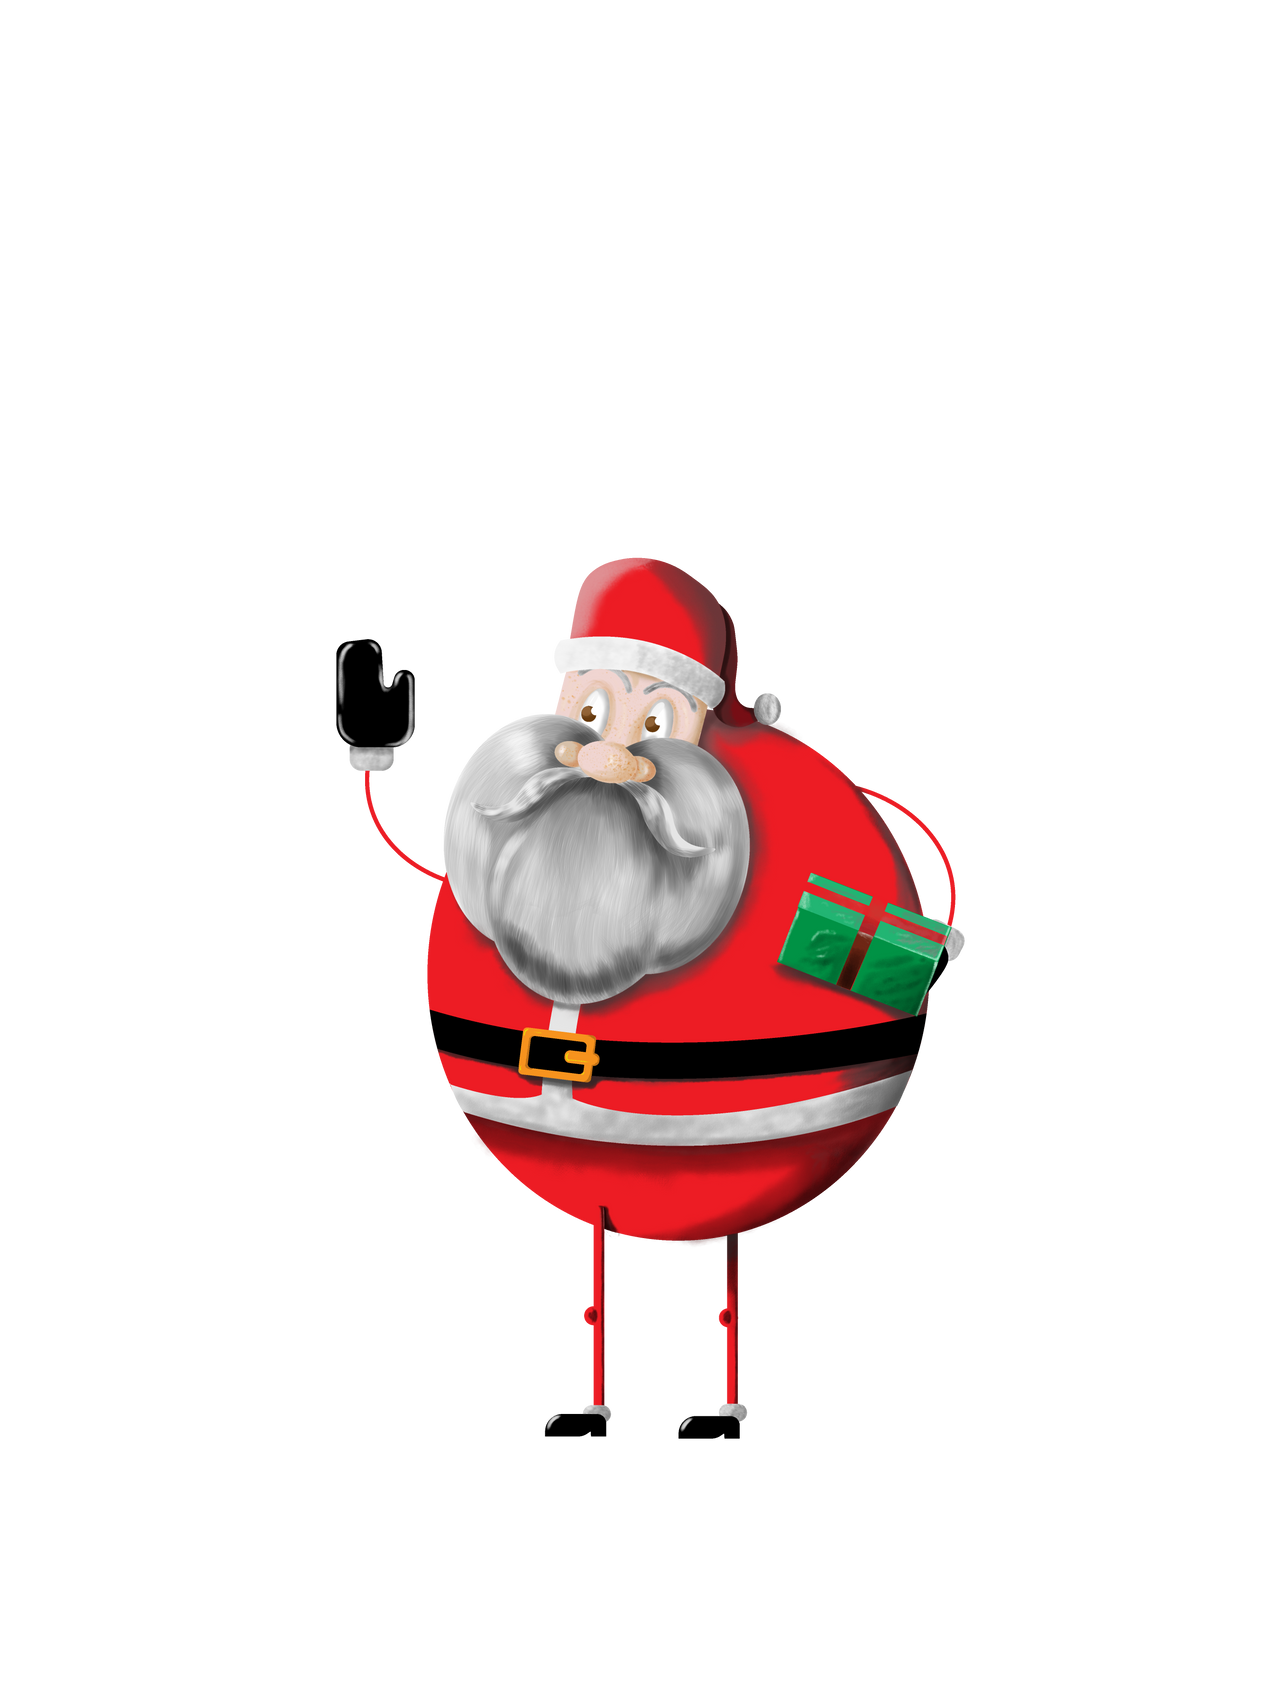 Papai Noel - SANTA CLAUS by aleitedepaula on DeviantArt